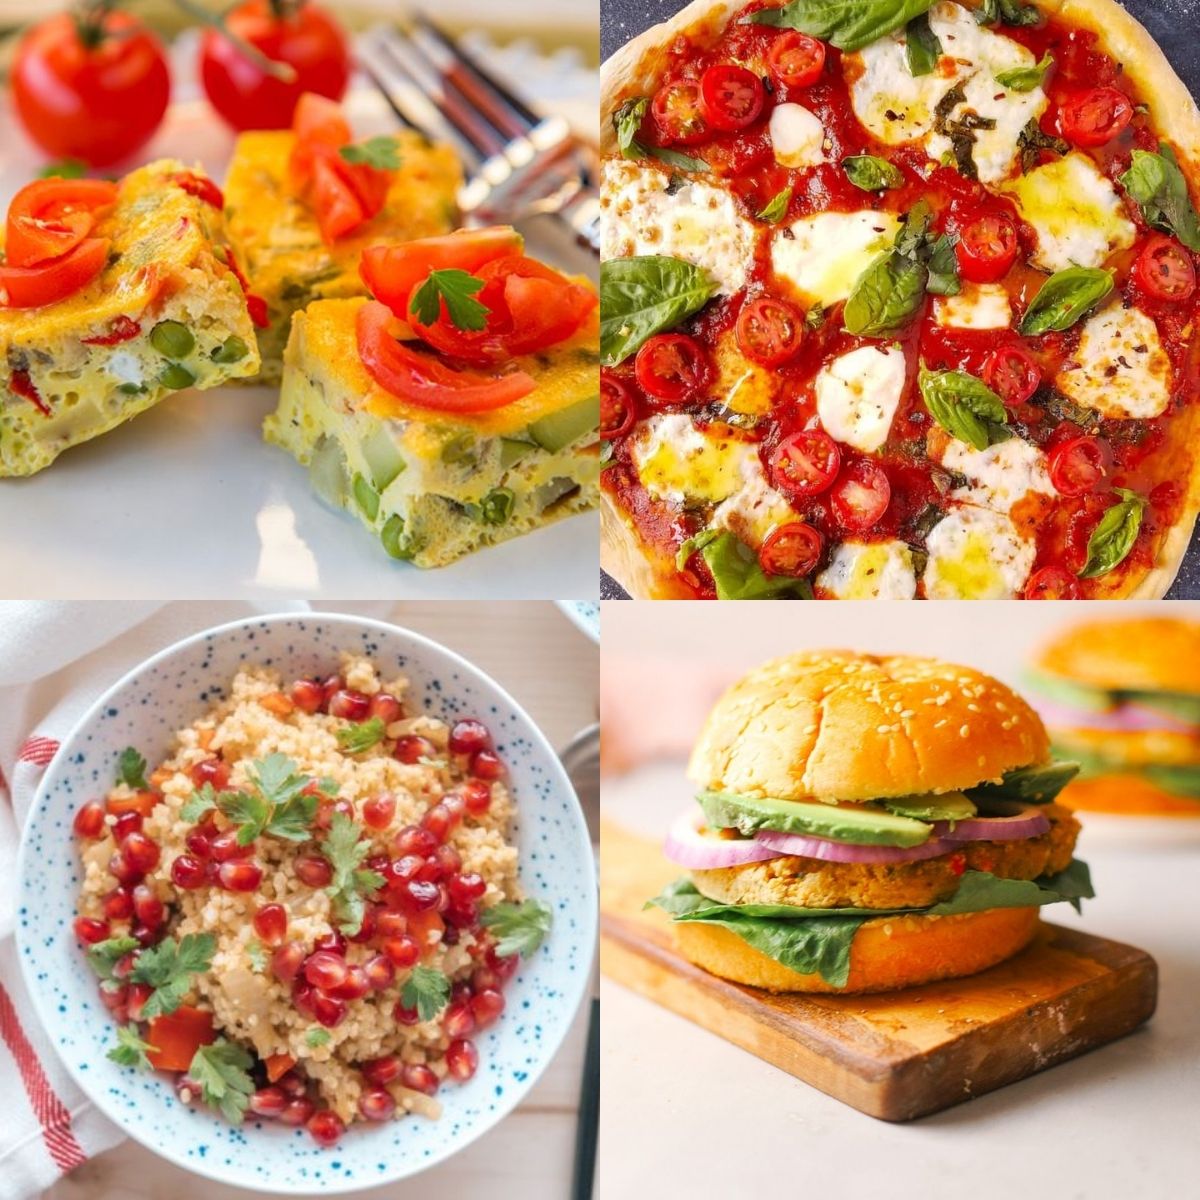 https://www.cushyspa.com/wp-content/uploads/2020/07/20-Under-200-Calorie-Meals.jpg